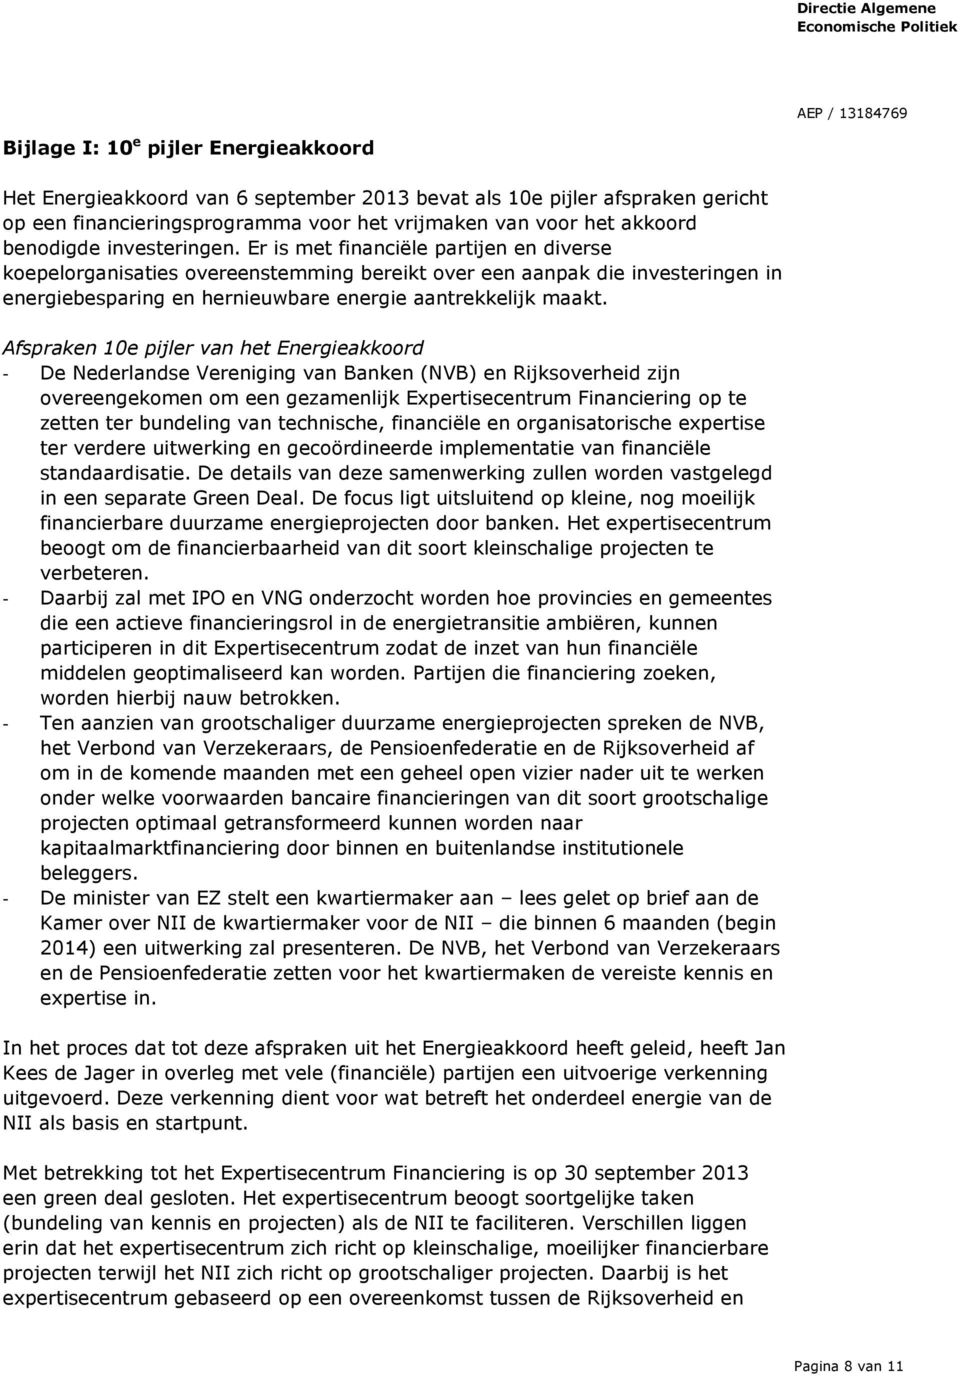 Afspraken 10e pijler van het Energieakkoord - De Nederlandse Vereniging van Banken (NVB) en Rijksoverheid zijn overeengekomen om een gezamenlijk Expertisecentrum Financiering op te zetten ter